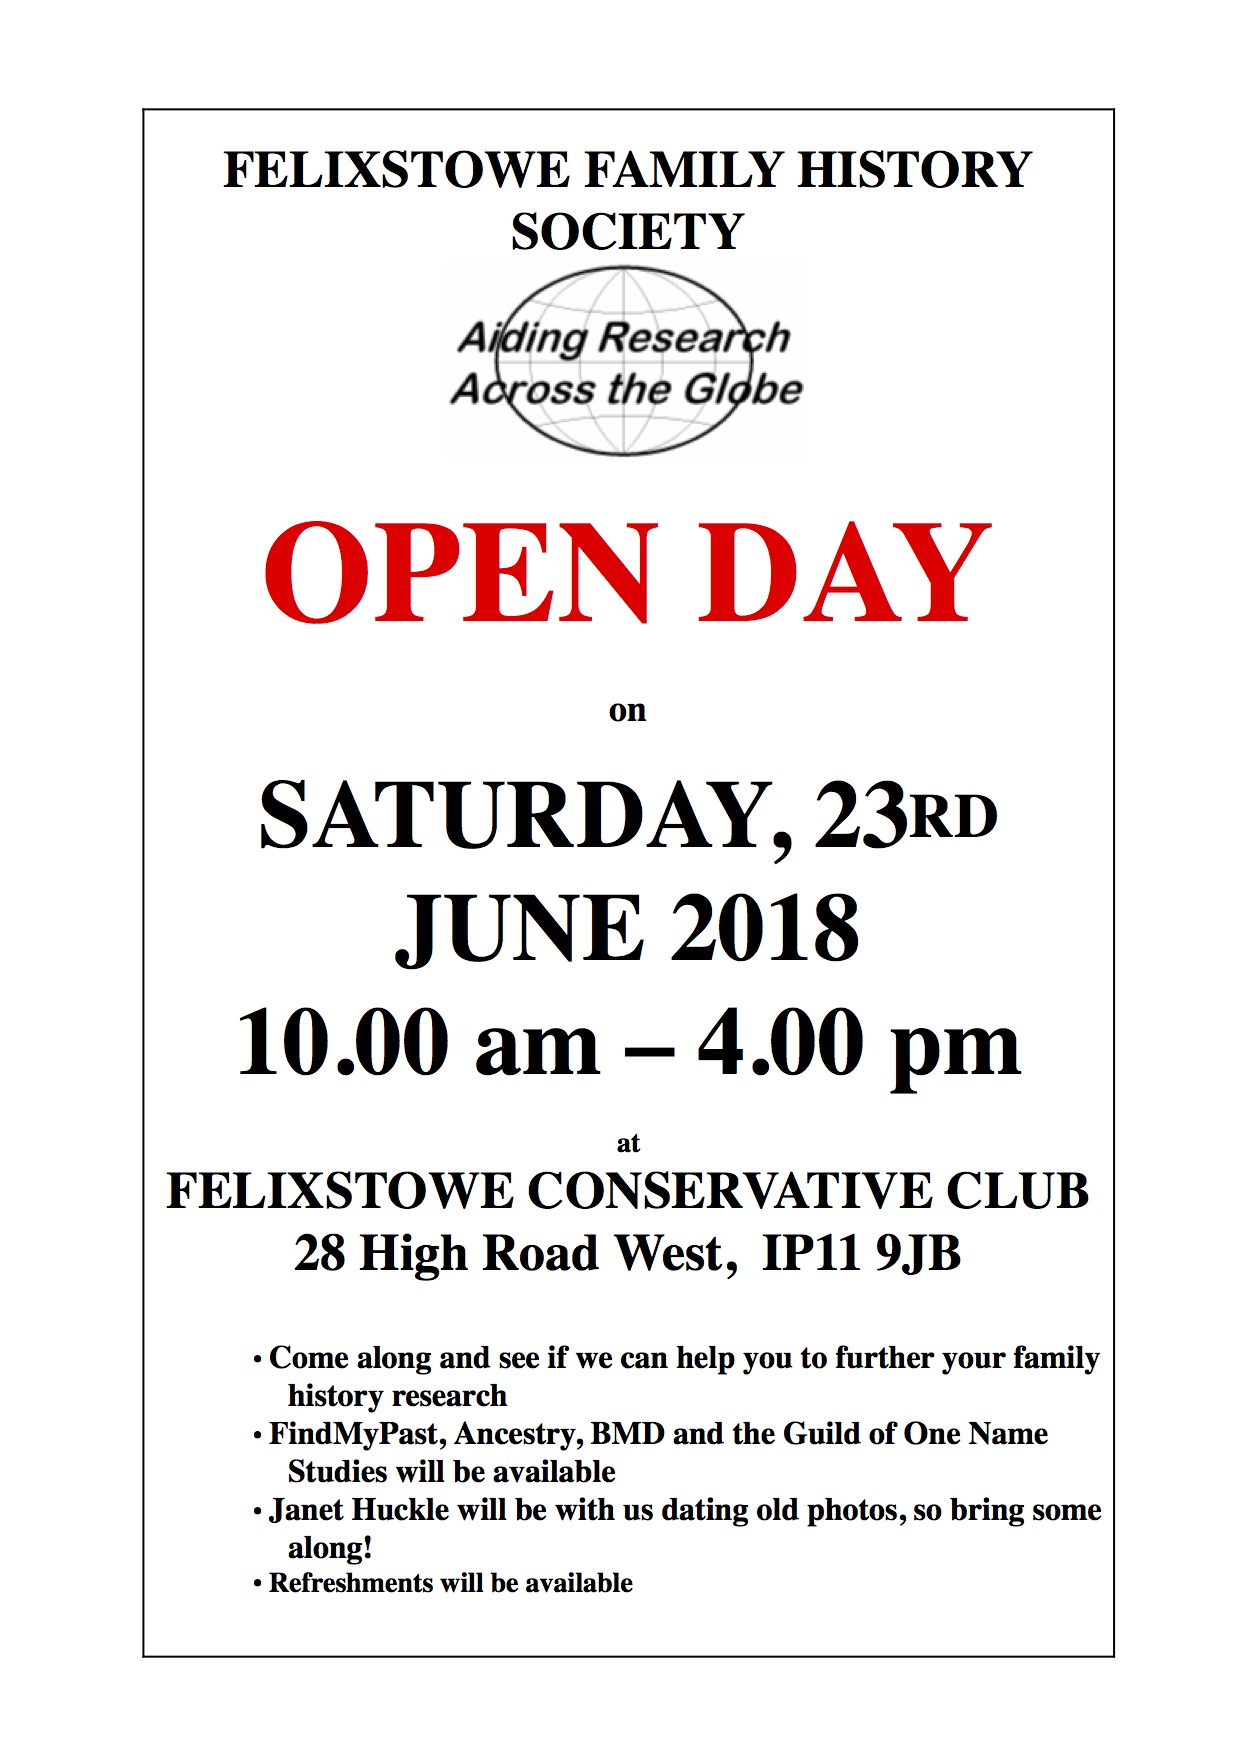 Felixstowe Family History Society Open Day